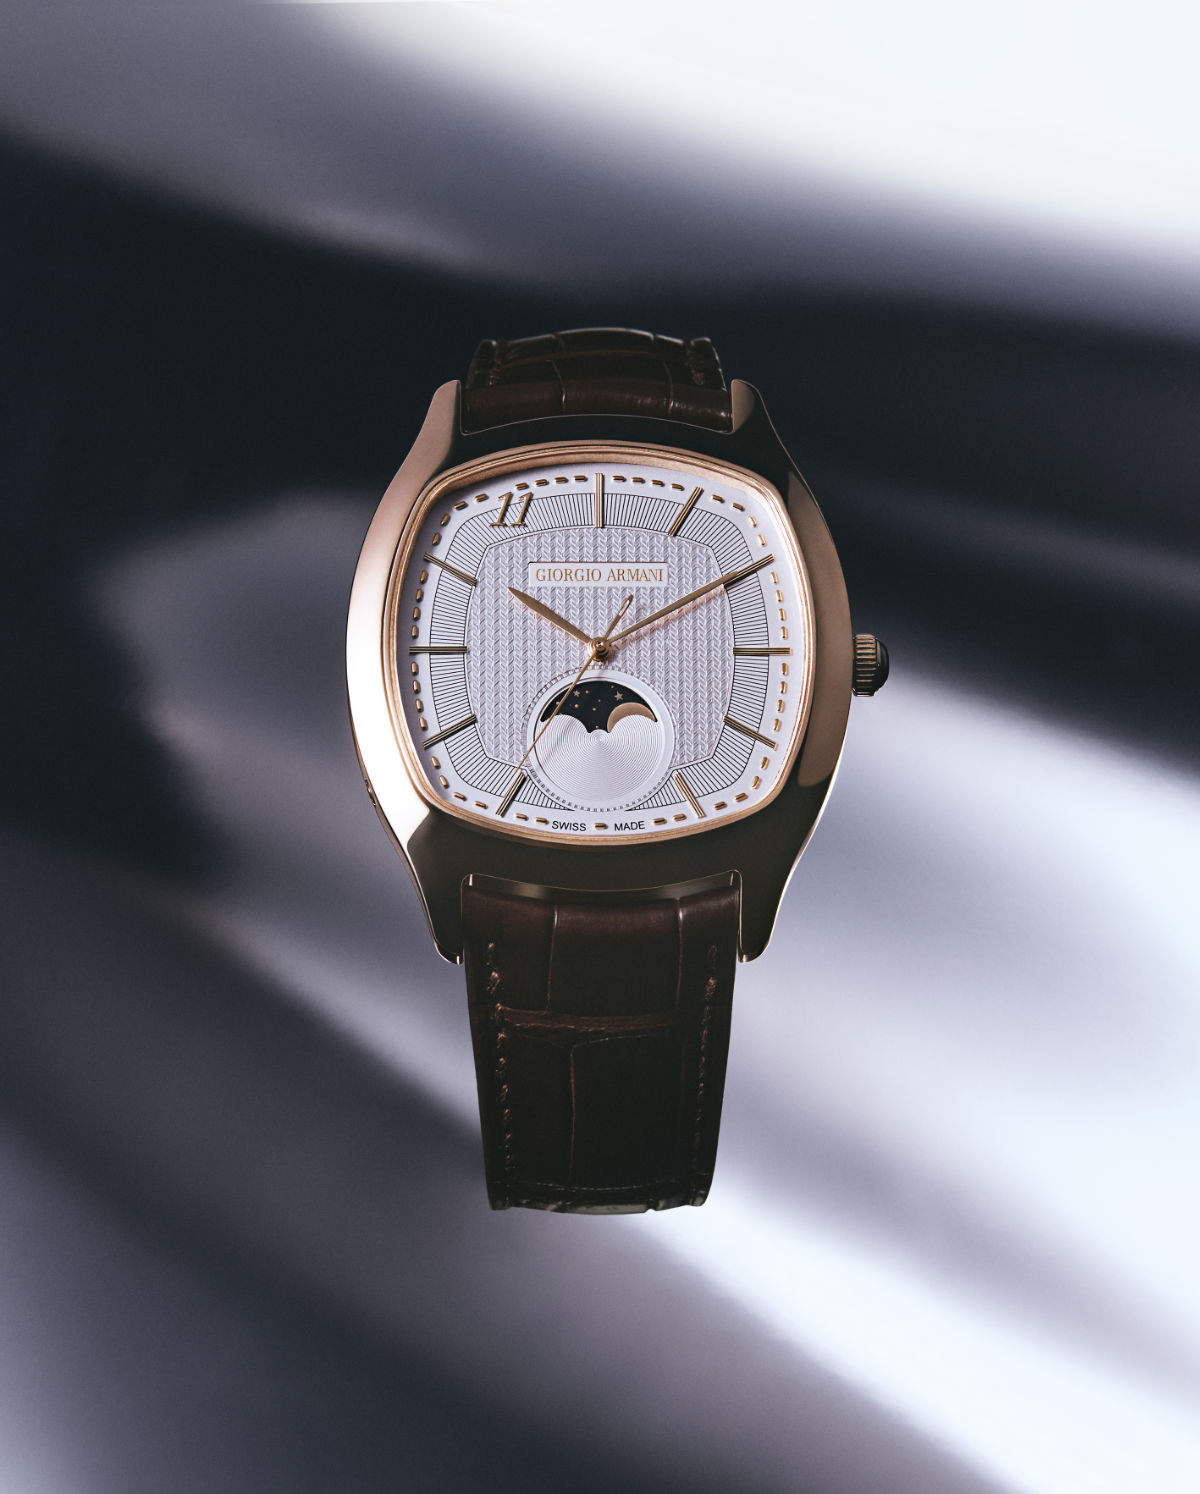 Giorgio Armani Presents “Giorgio Arman 11”, The New Watch For Men And Women